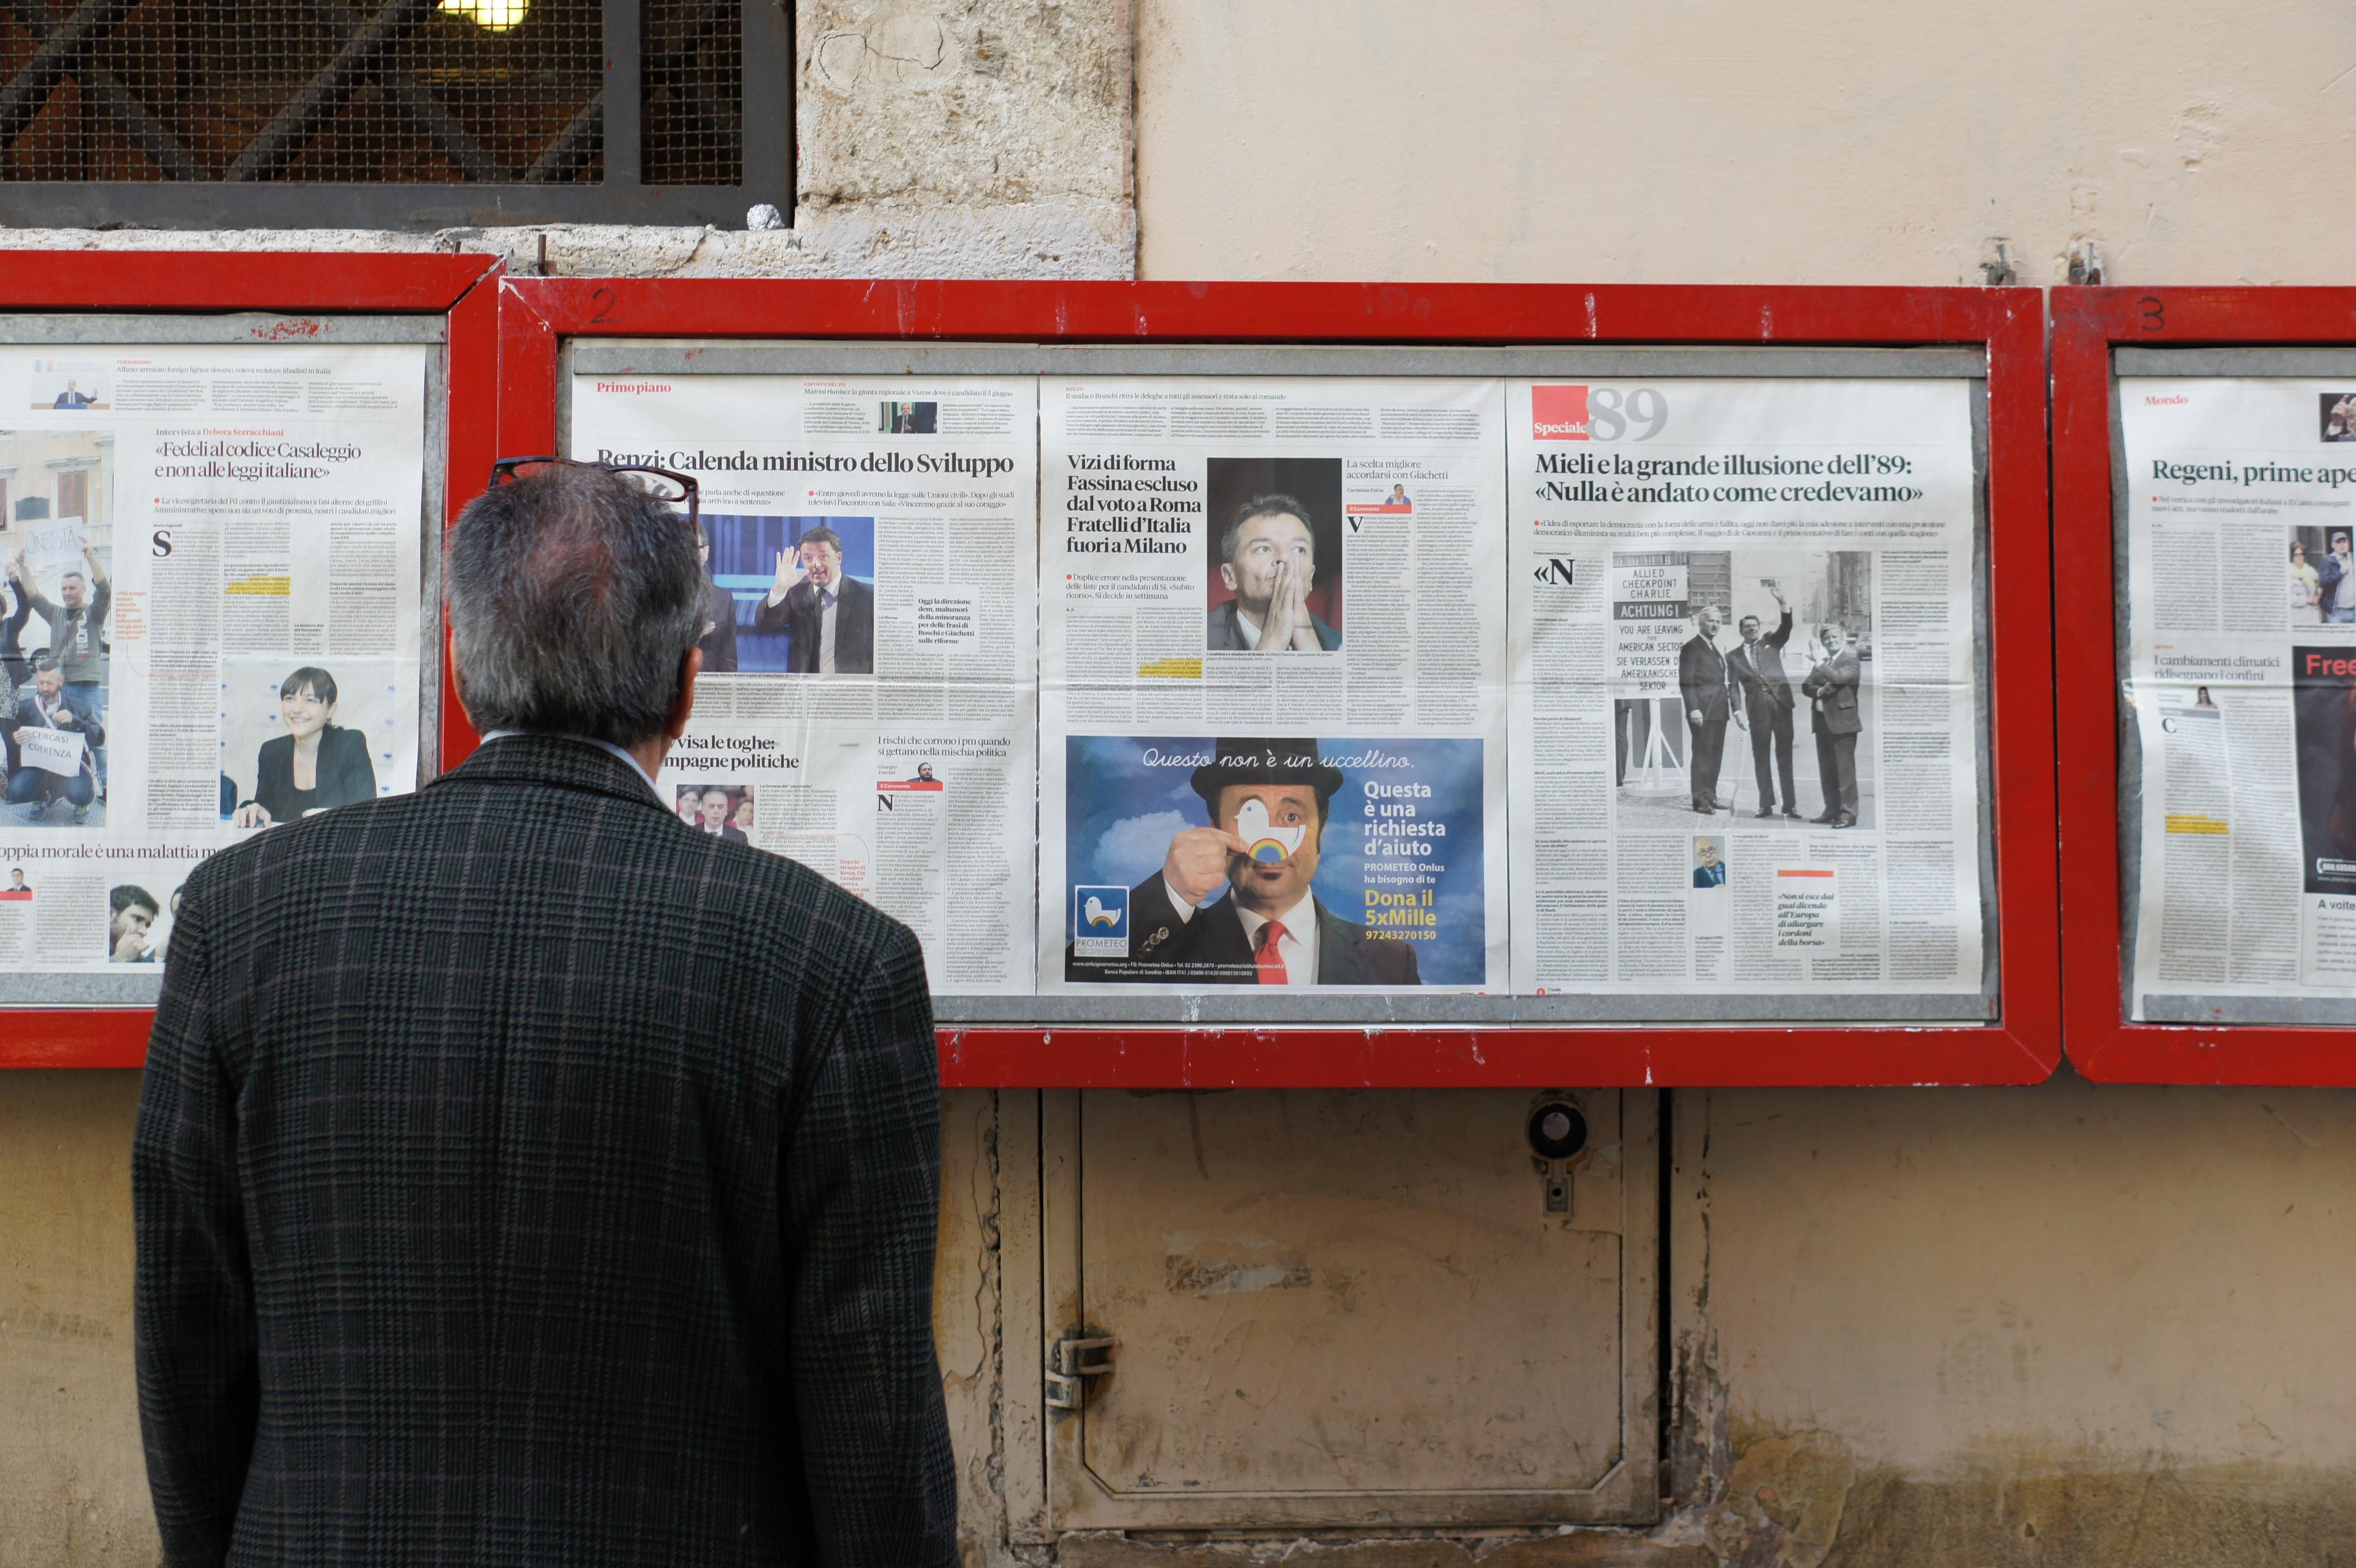 Egy öltönyös férfi olvassa a híreket különböző újságokból egyszerre